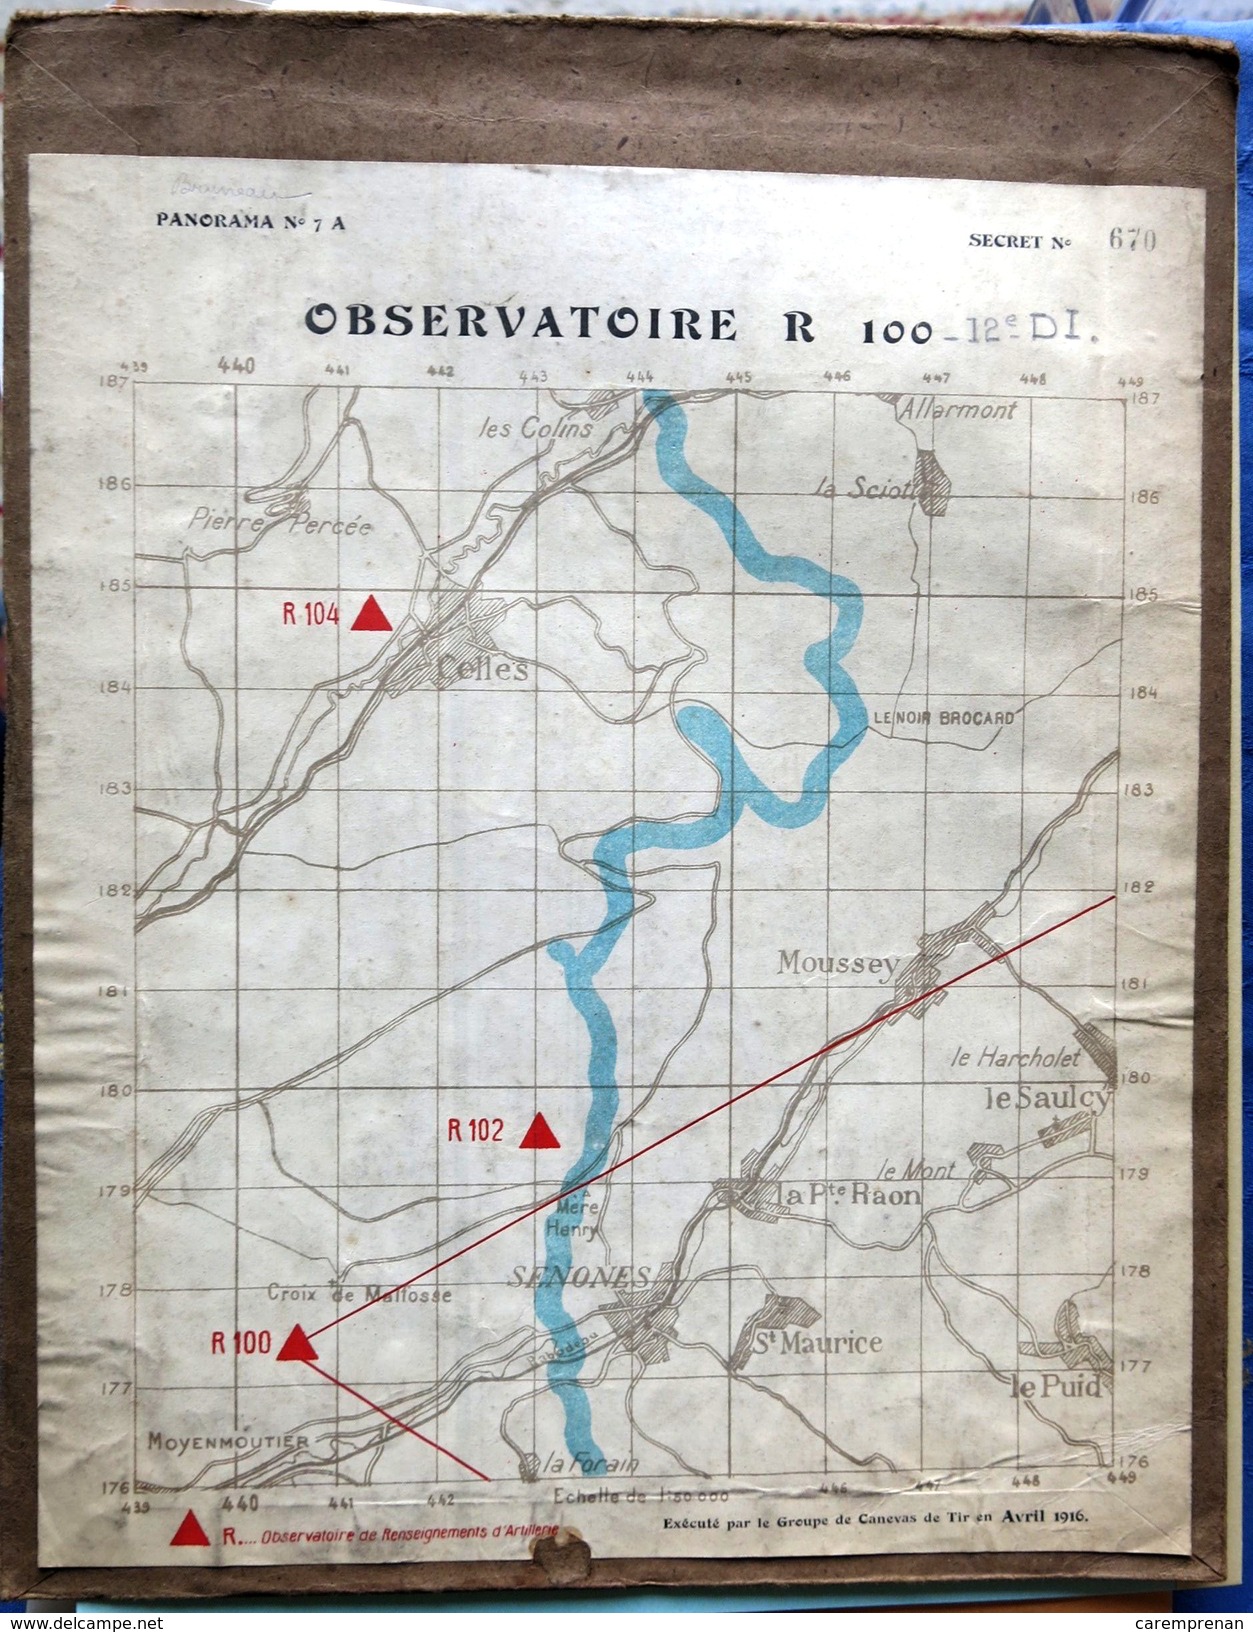 Première guerre mondiale. Front des Vosges : cartes et photographies (artillerie)